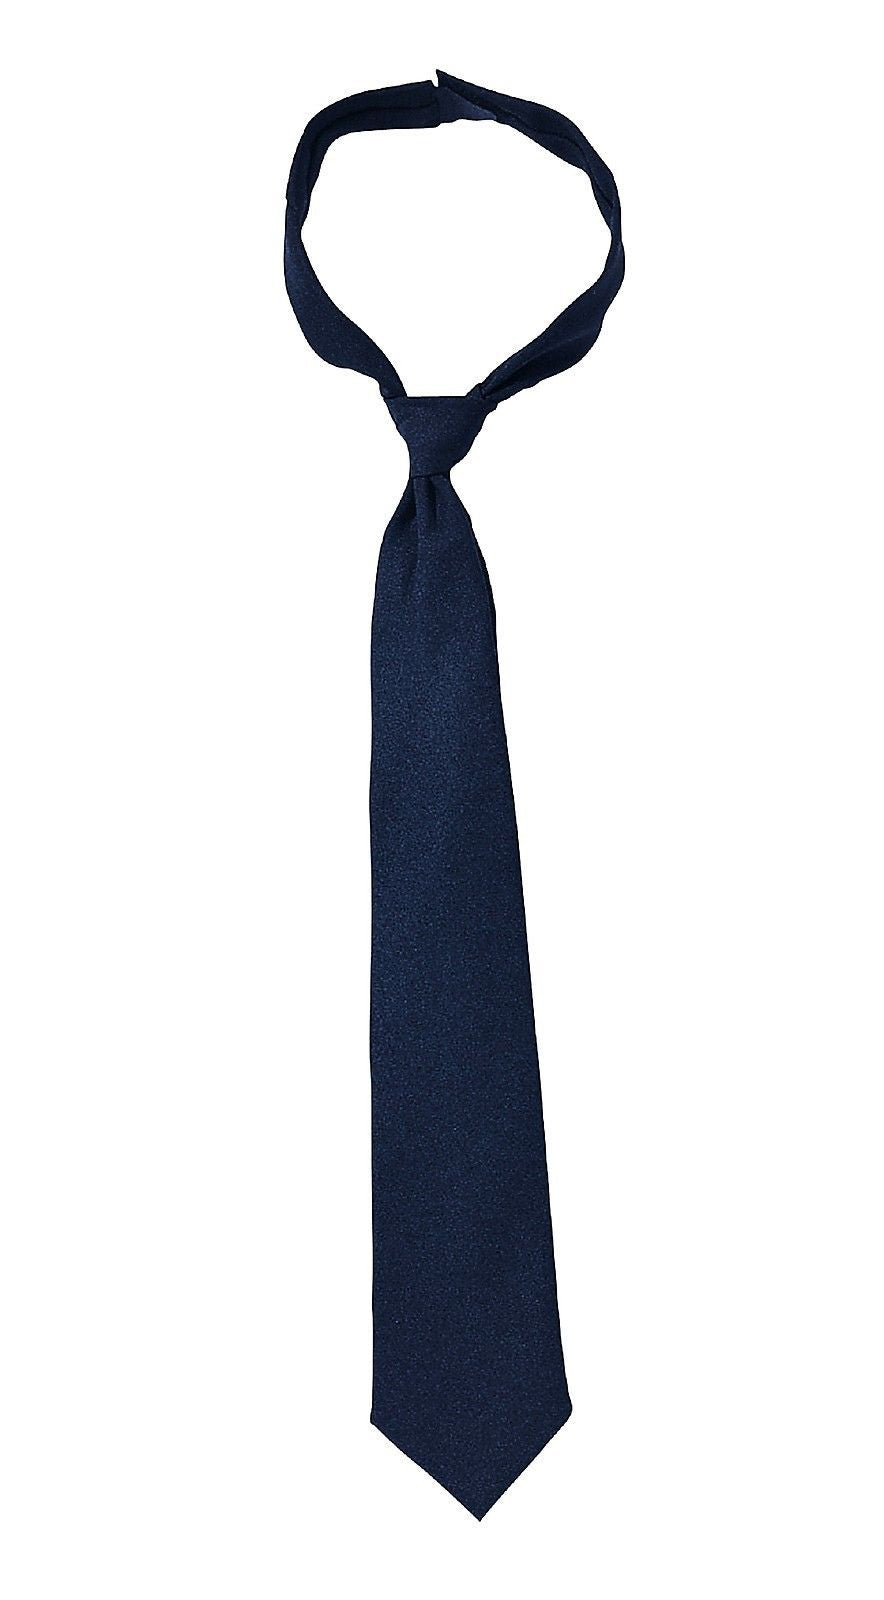 Men's Black & Navy Blue Neck Tie 18